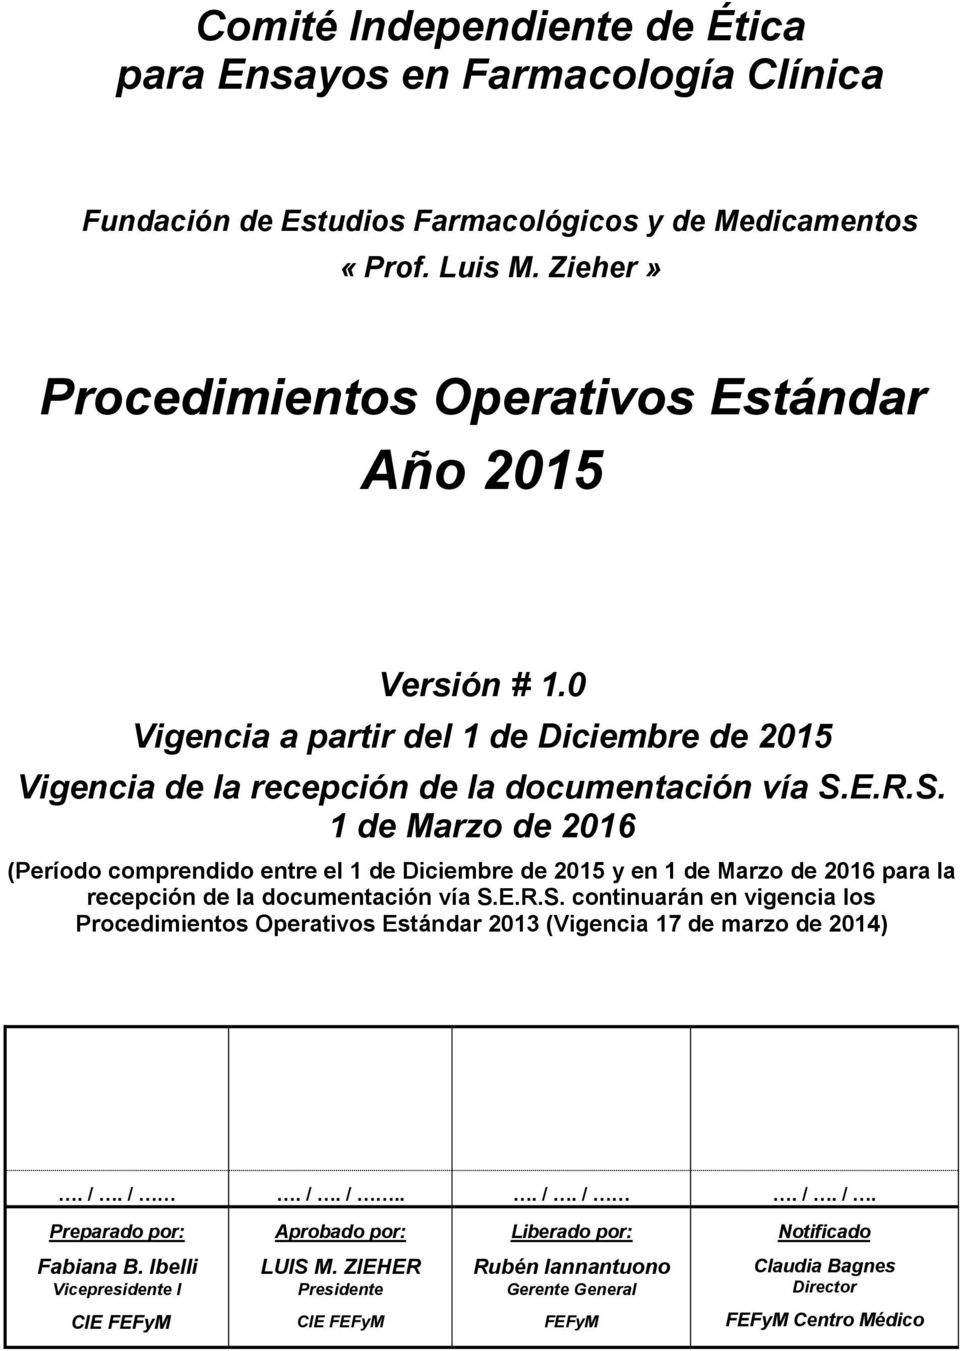 E.R.S. 1 de Marzo de 2016 (Período comprendido entre el 1 de Diciembre de 2015 y en 1 de Marzo de 2016 para la recepción de la documentación vía S.E.R.S. continuarán en vigencia los Procedimientos Operativos Estándar 2013 (Vigencia 17 de marzo de 2014).